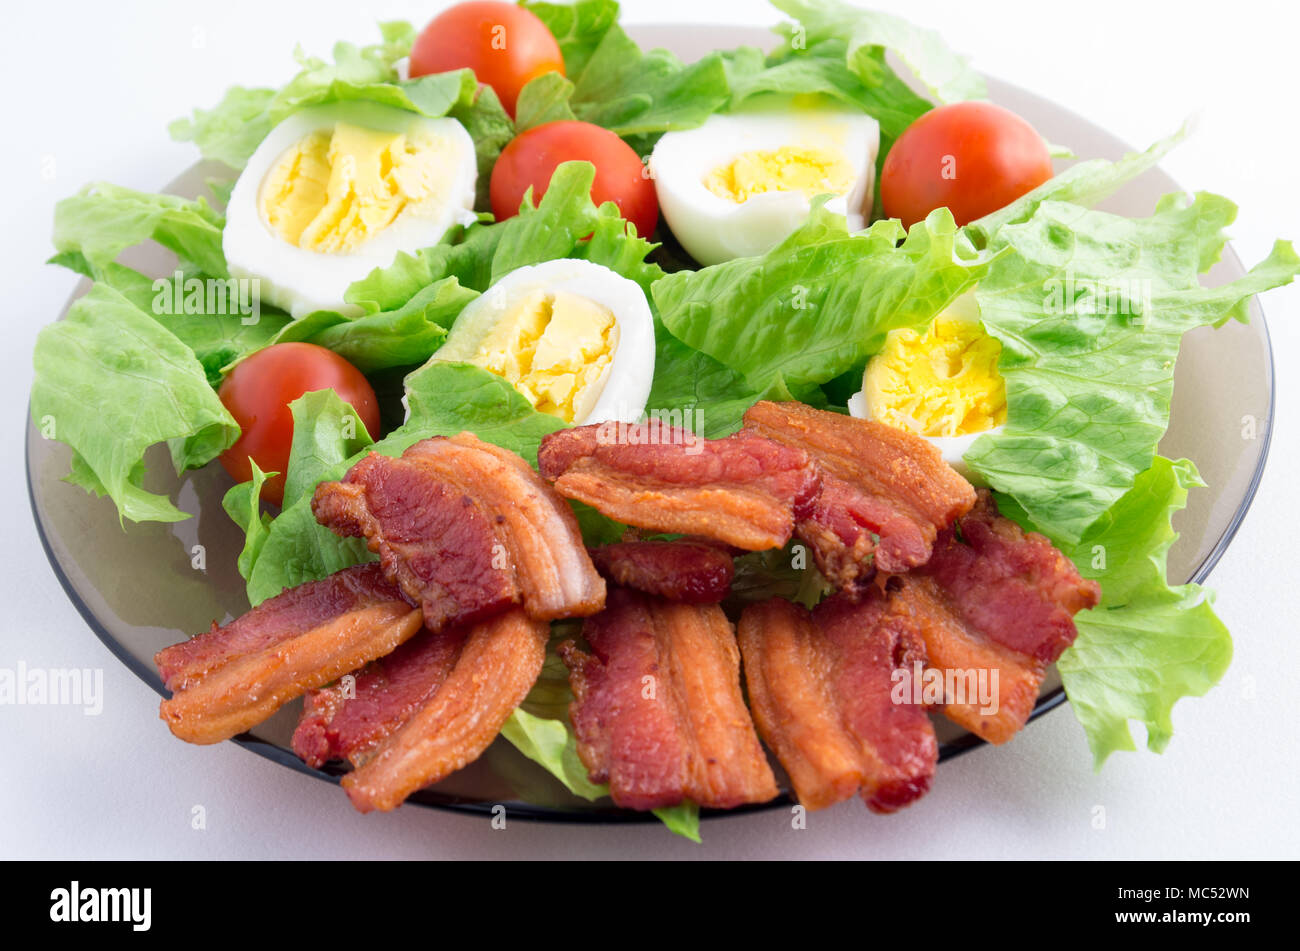 Salade, tomates cerises, du bacon et des œufs sur une plaque close-up avec une faible profondeur de foyer Banque D'Images